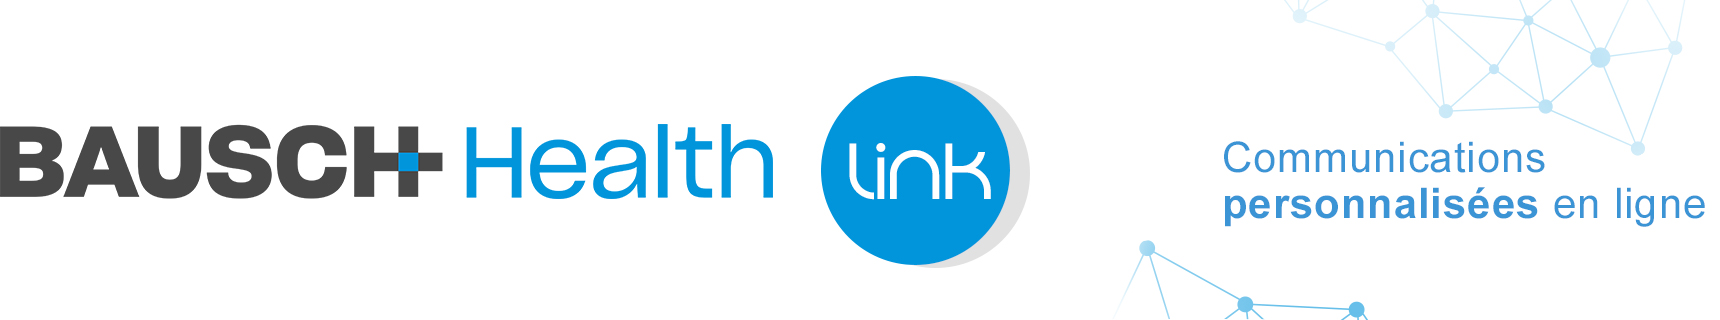 Bausch Health Link, Communications personnalisées en ligne